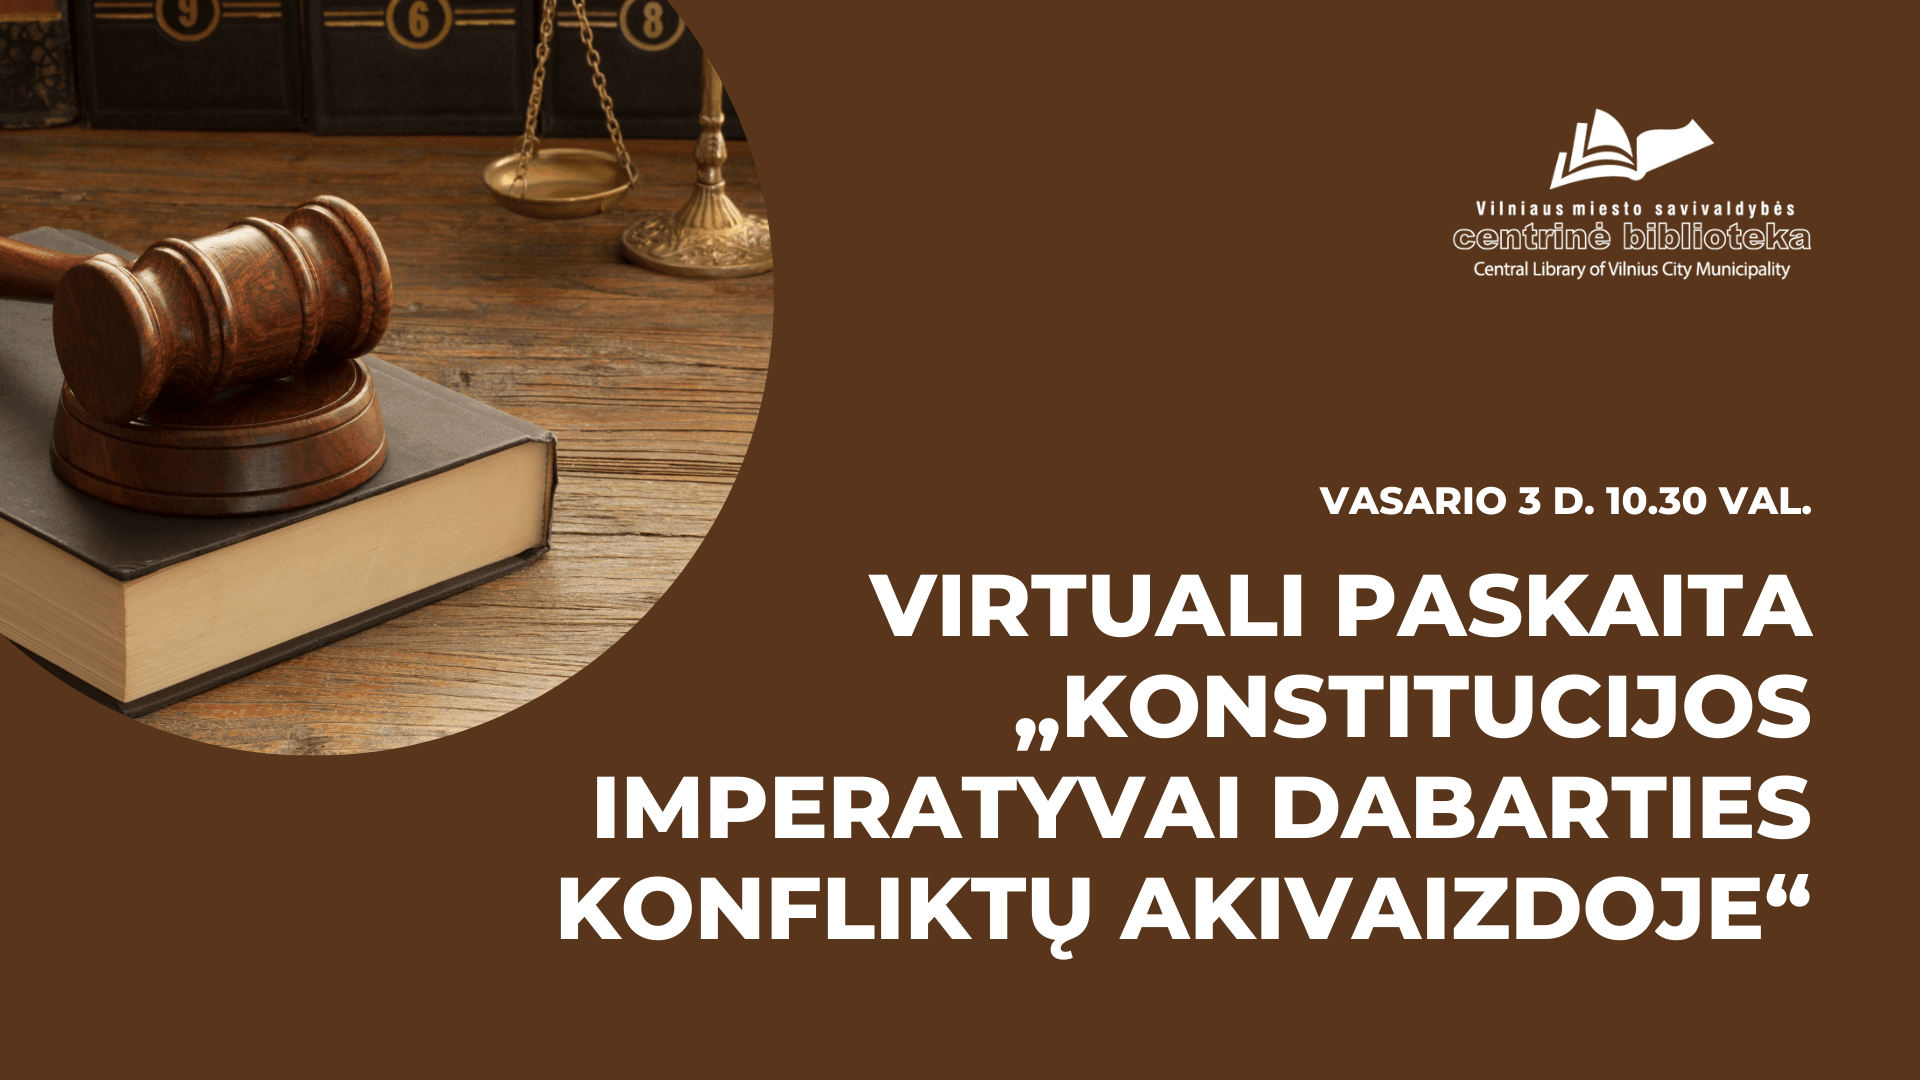 Virtuali paskaita - konstitucija